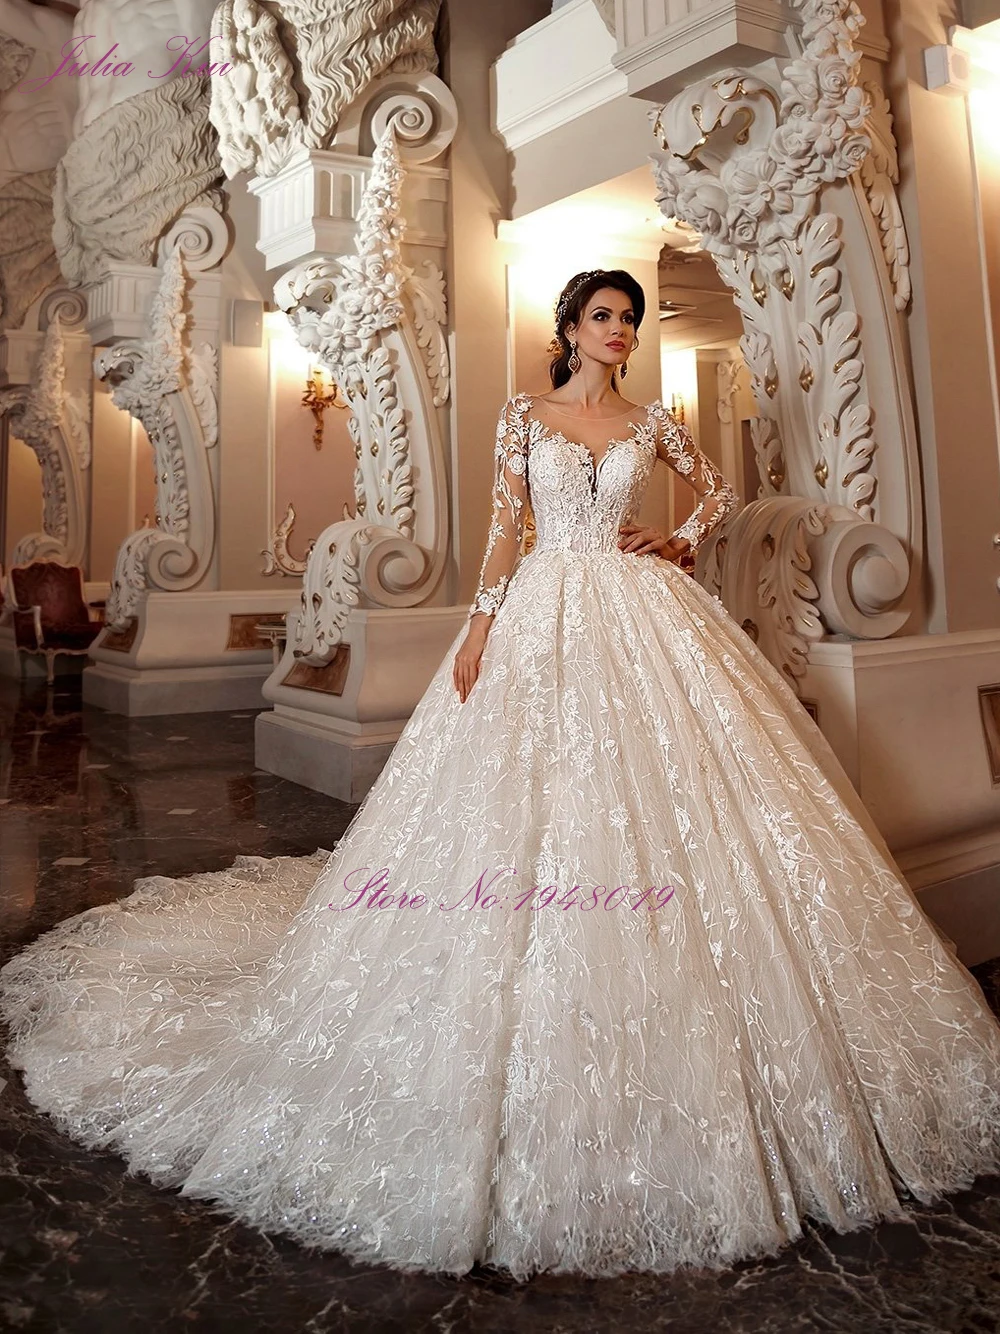 Julia Kui Вышитые Кружева и тюль ткани бальное платье свадебное платье принцессы платье невесты